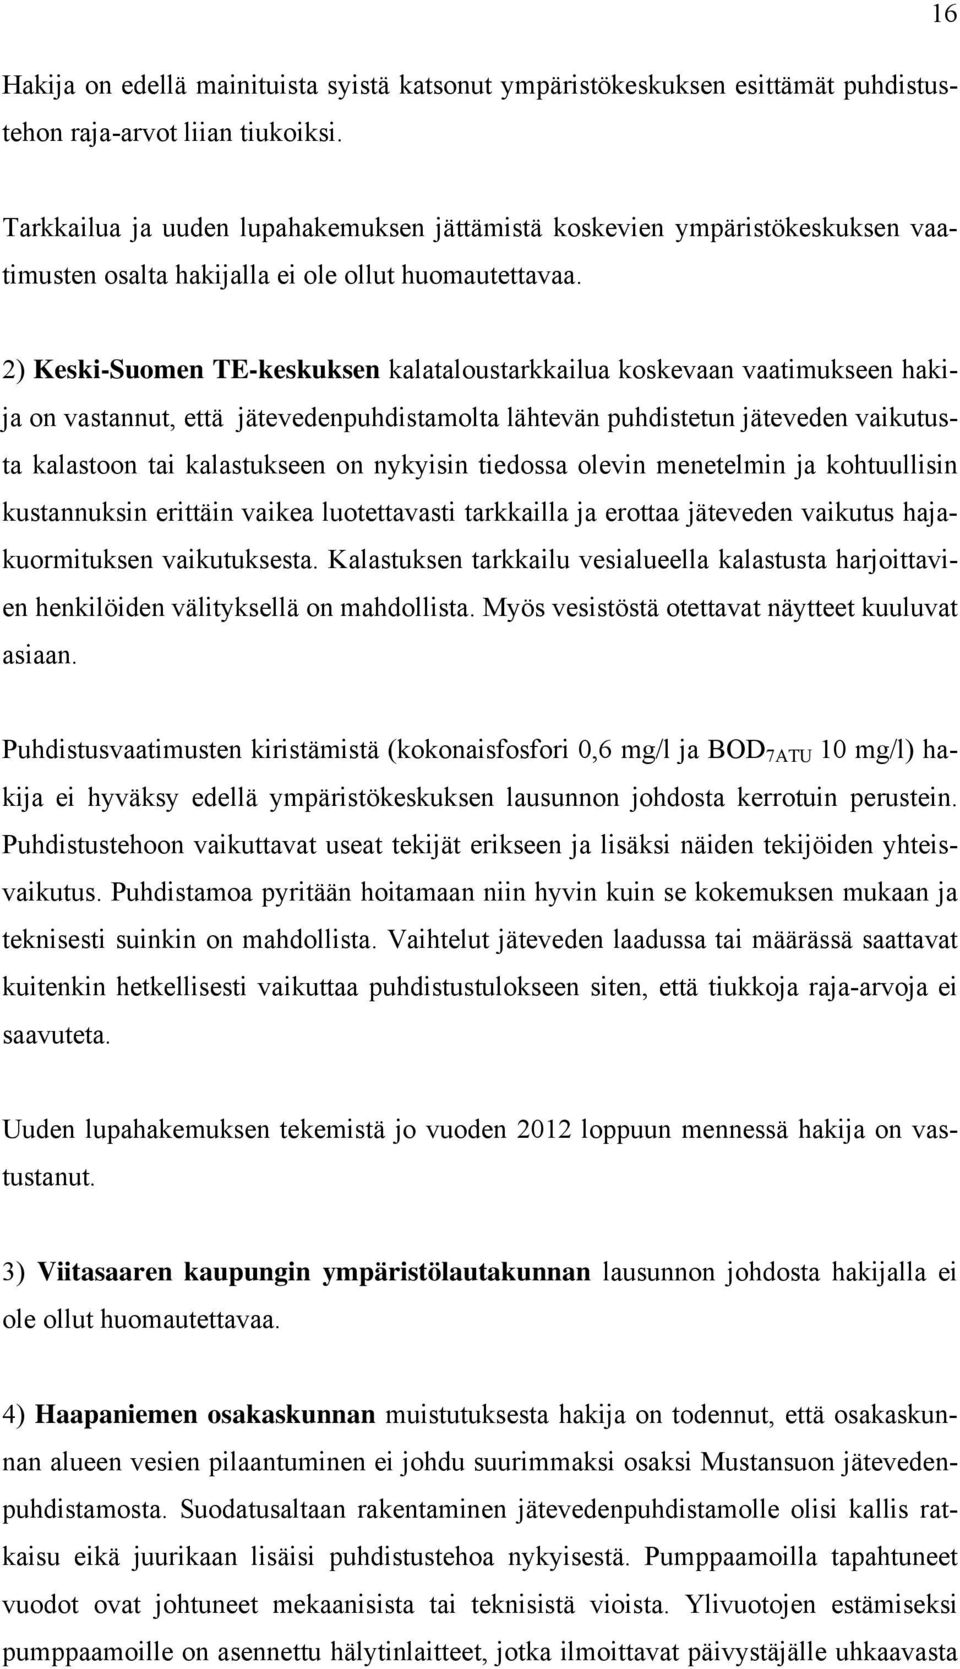 2) Keski-Suomen TE-keskuksen kalataloustarkkailua koskevaan vaatimukseen hakija on vastannut, että jätevedenpuhdistamolta lähtevän puhdistetun jäteveden vaikutusta kalastoon tai kalastukseen on